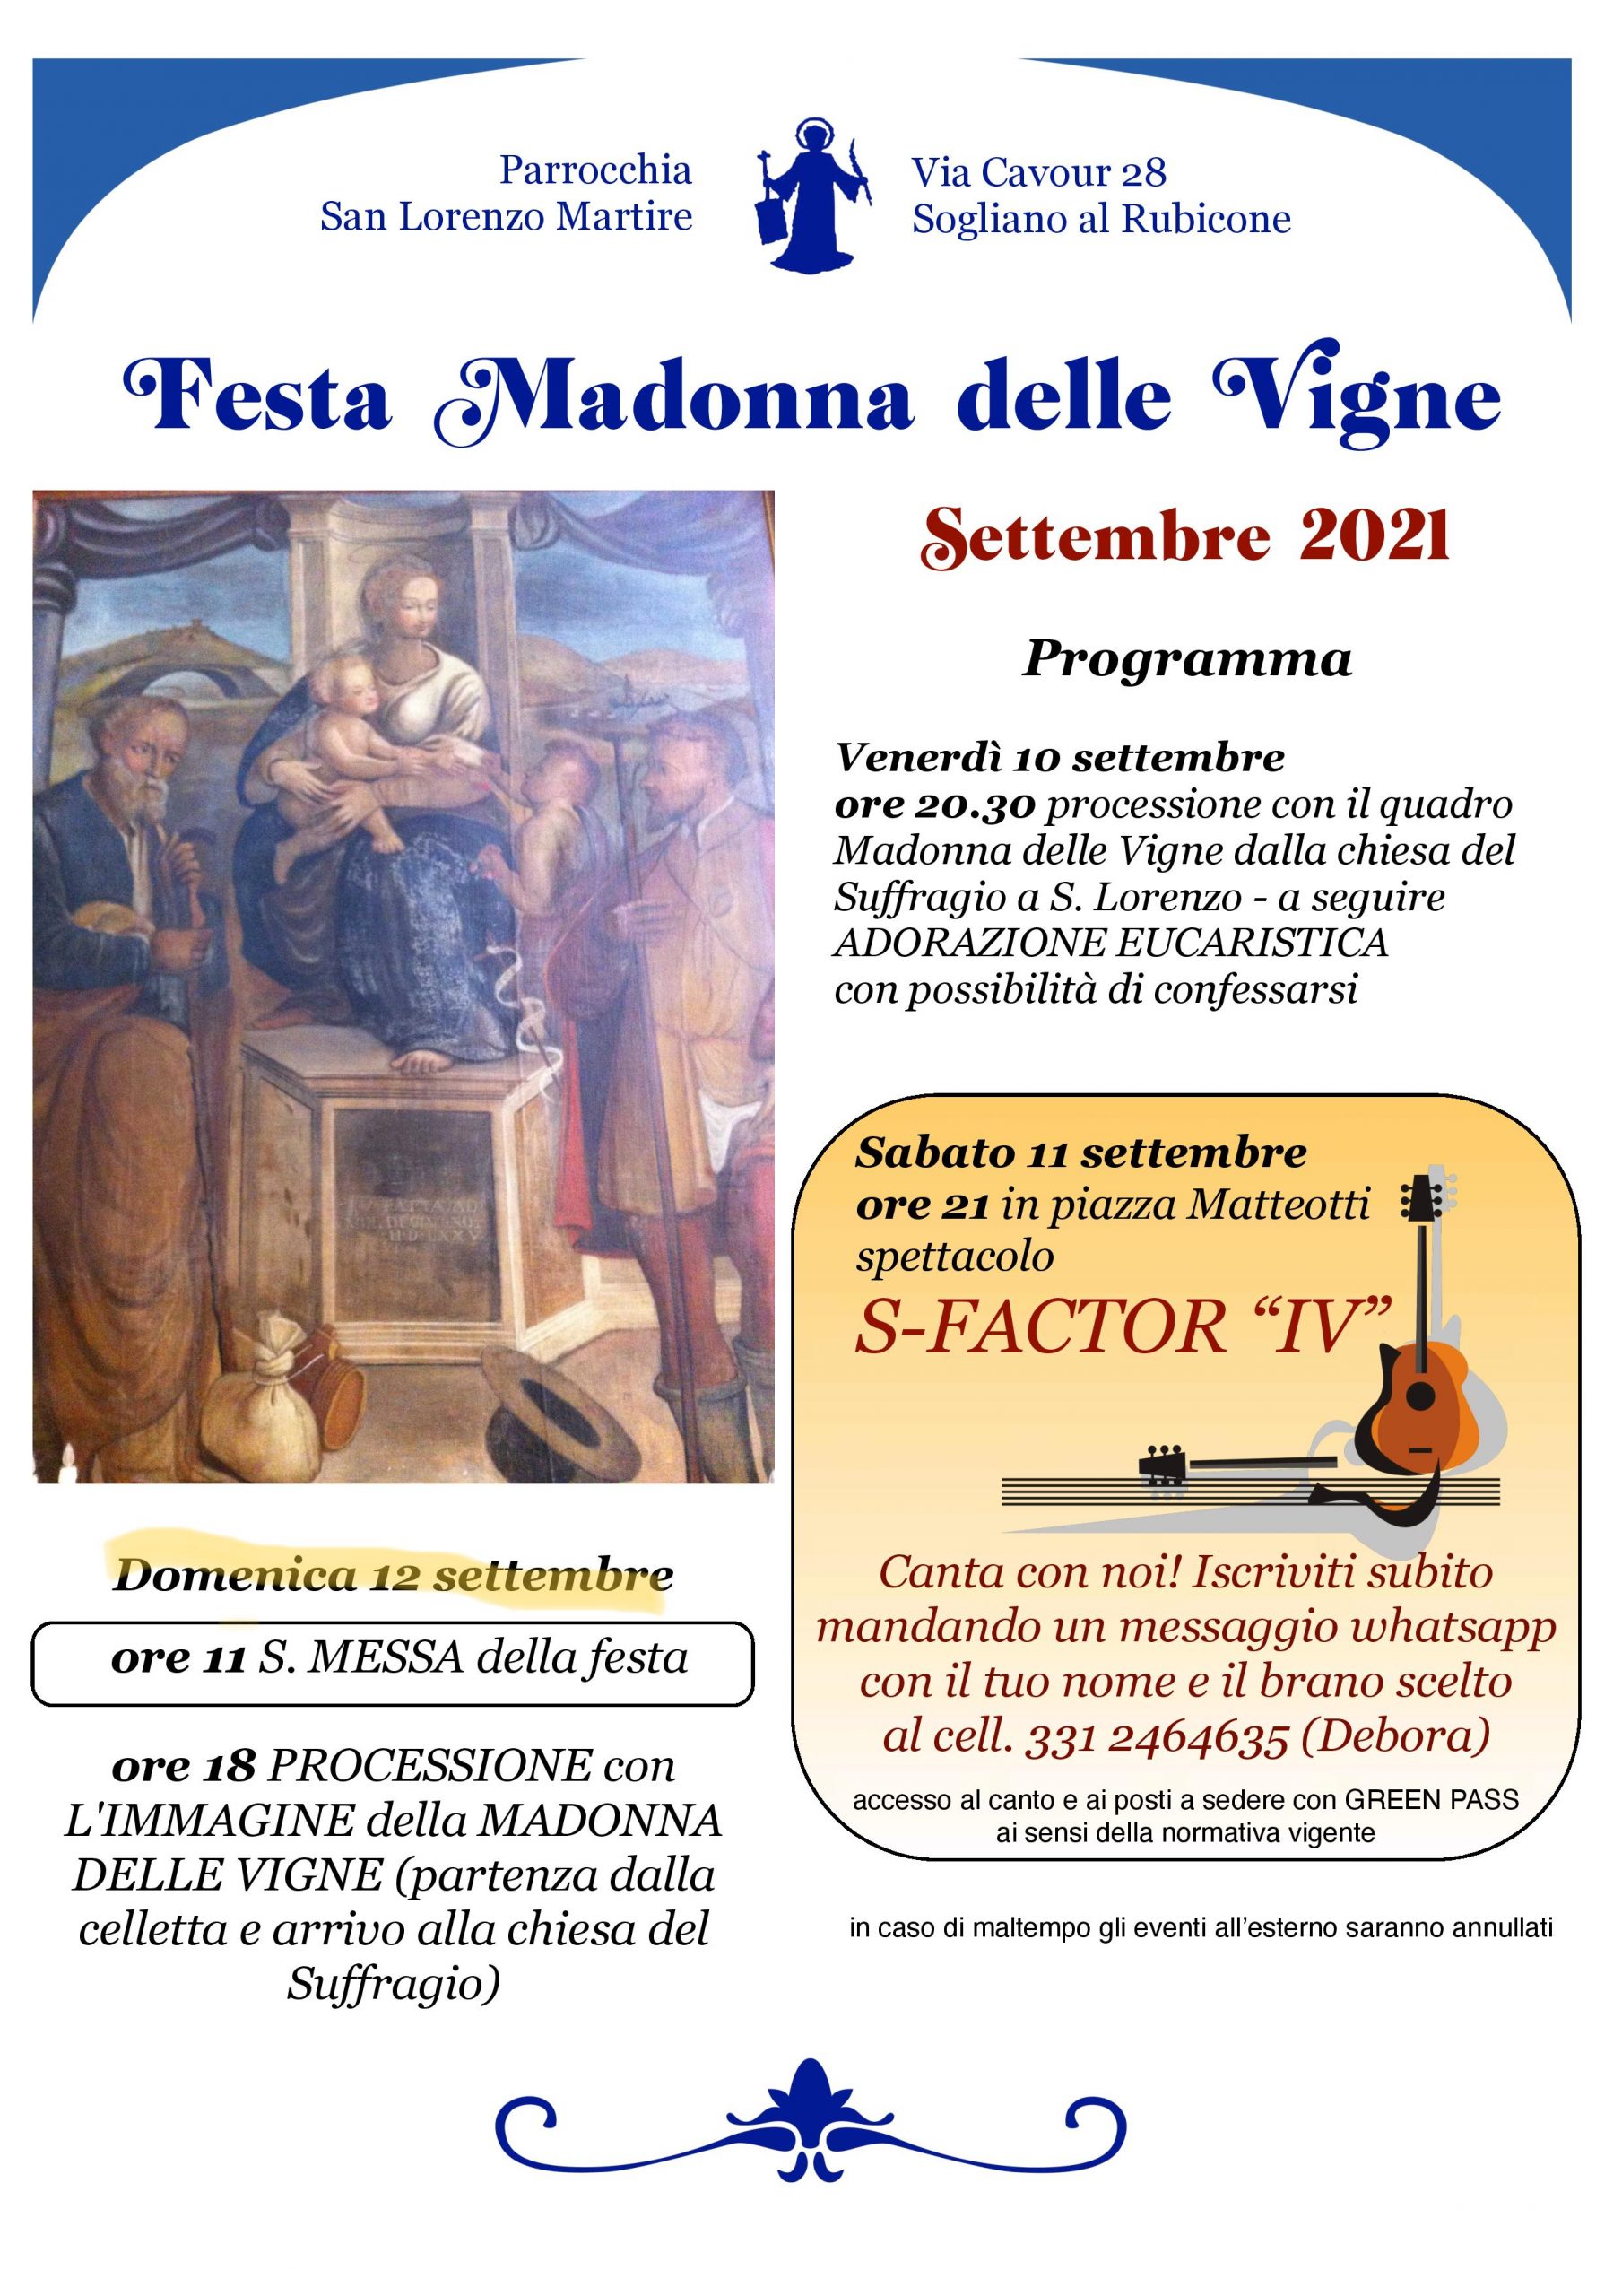 Visit - Sogliano al Rubicone - Eventi - Festa Madonna delle vigne